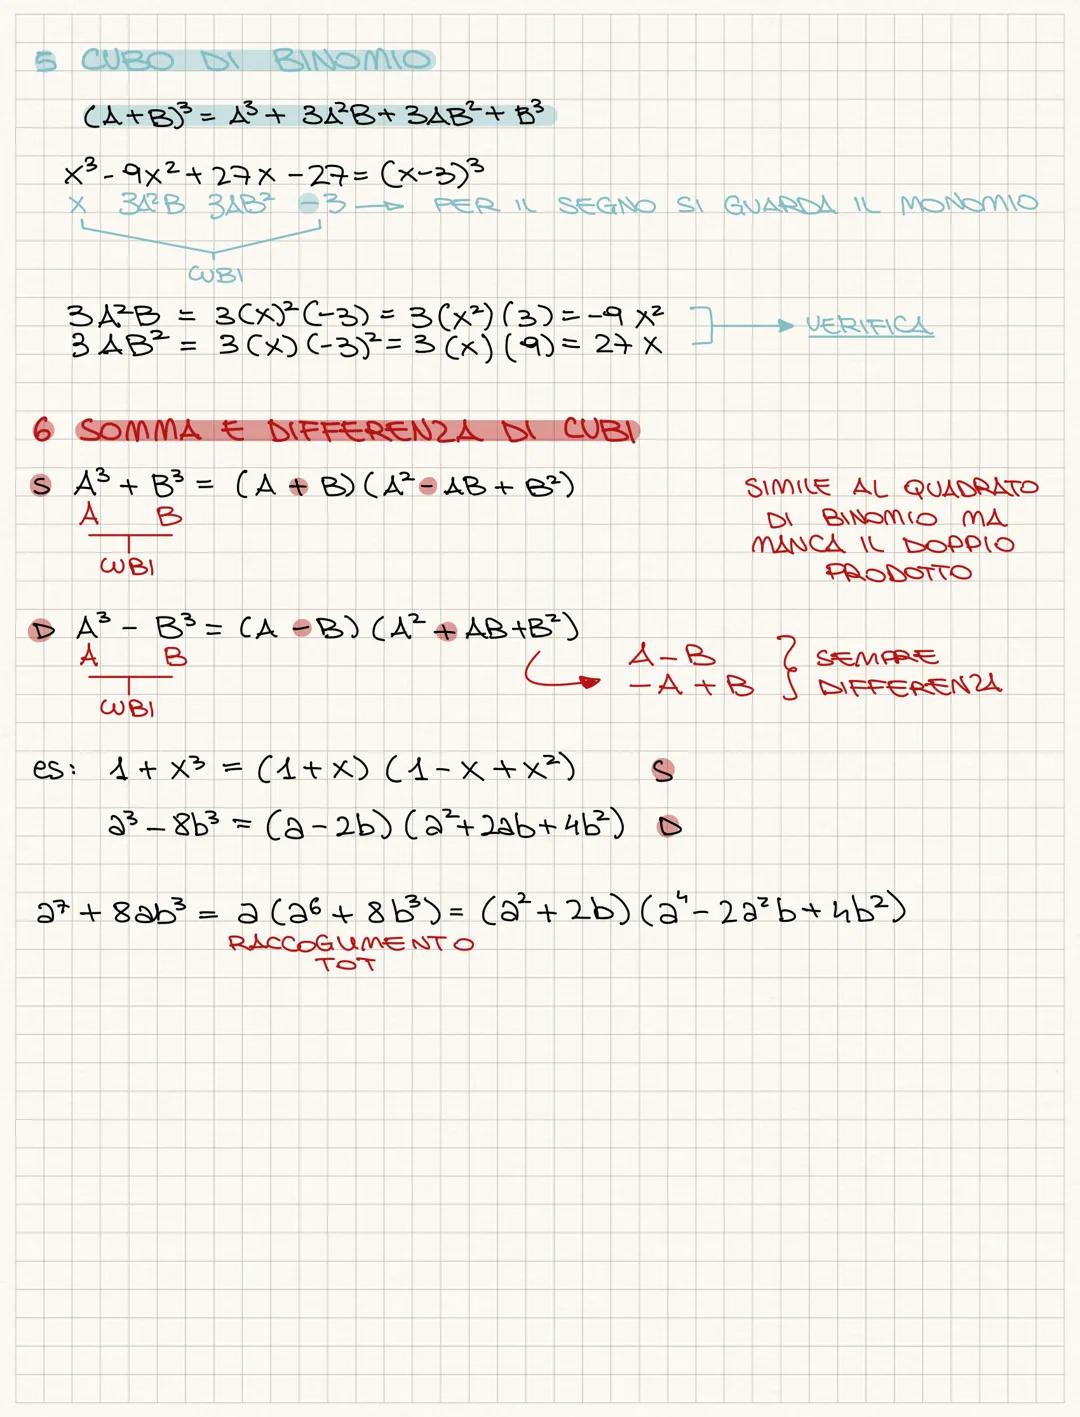 <h2 id="quadratodibinomioab">QUADRATO DI BINOMIO (A + B)²</h2>
<p>The formula for finding the square of a binomial is (A + B)² = A² + 2AB + 